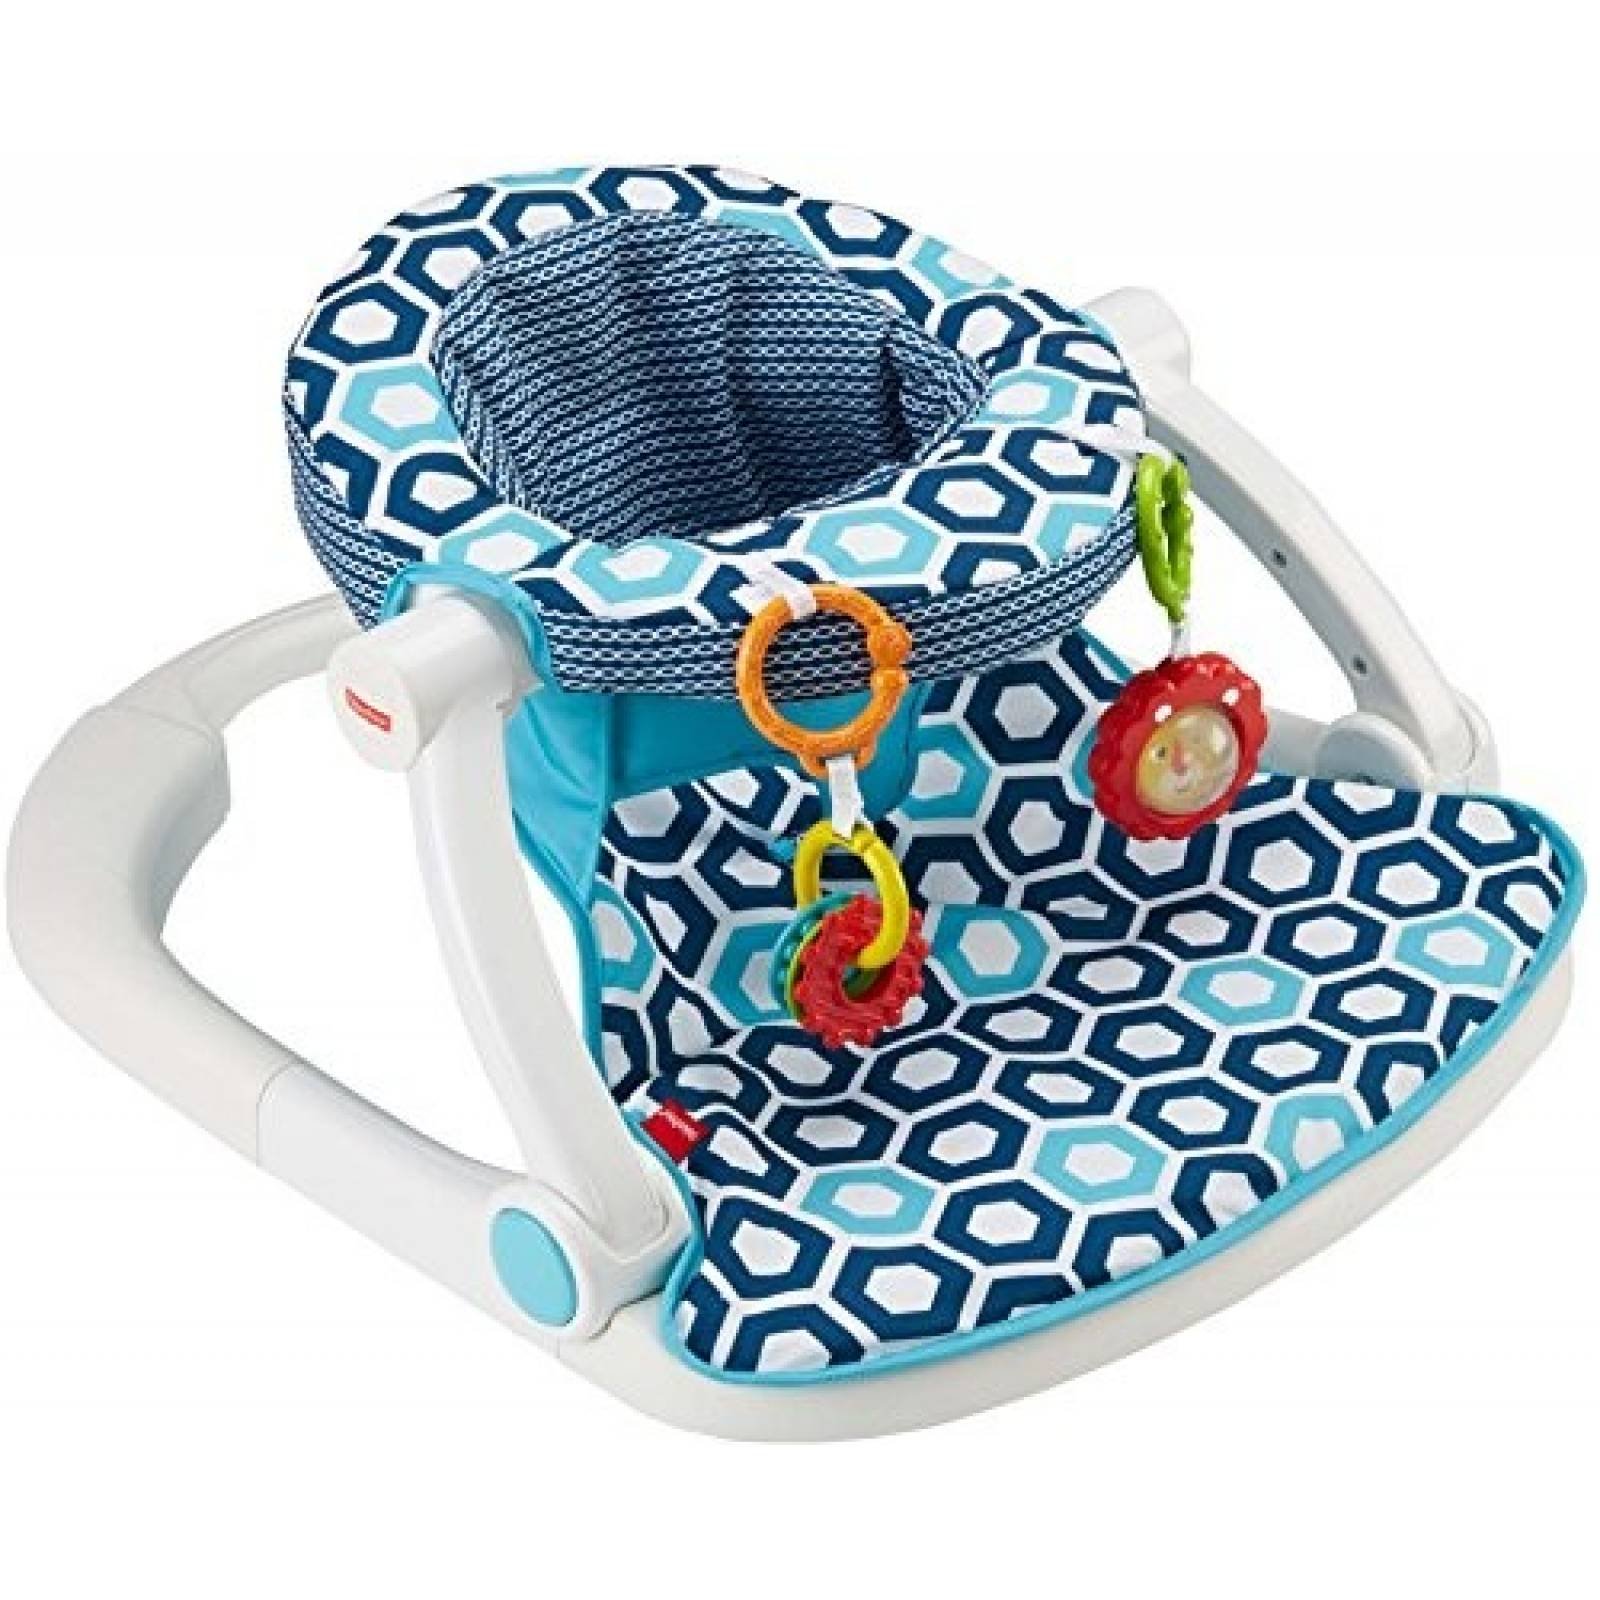 Asiento de piso para bebé Fisher-Price 2 juguetes -Azul